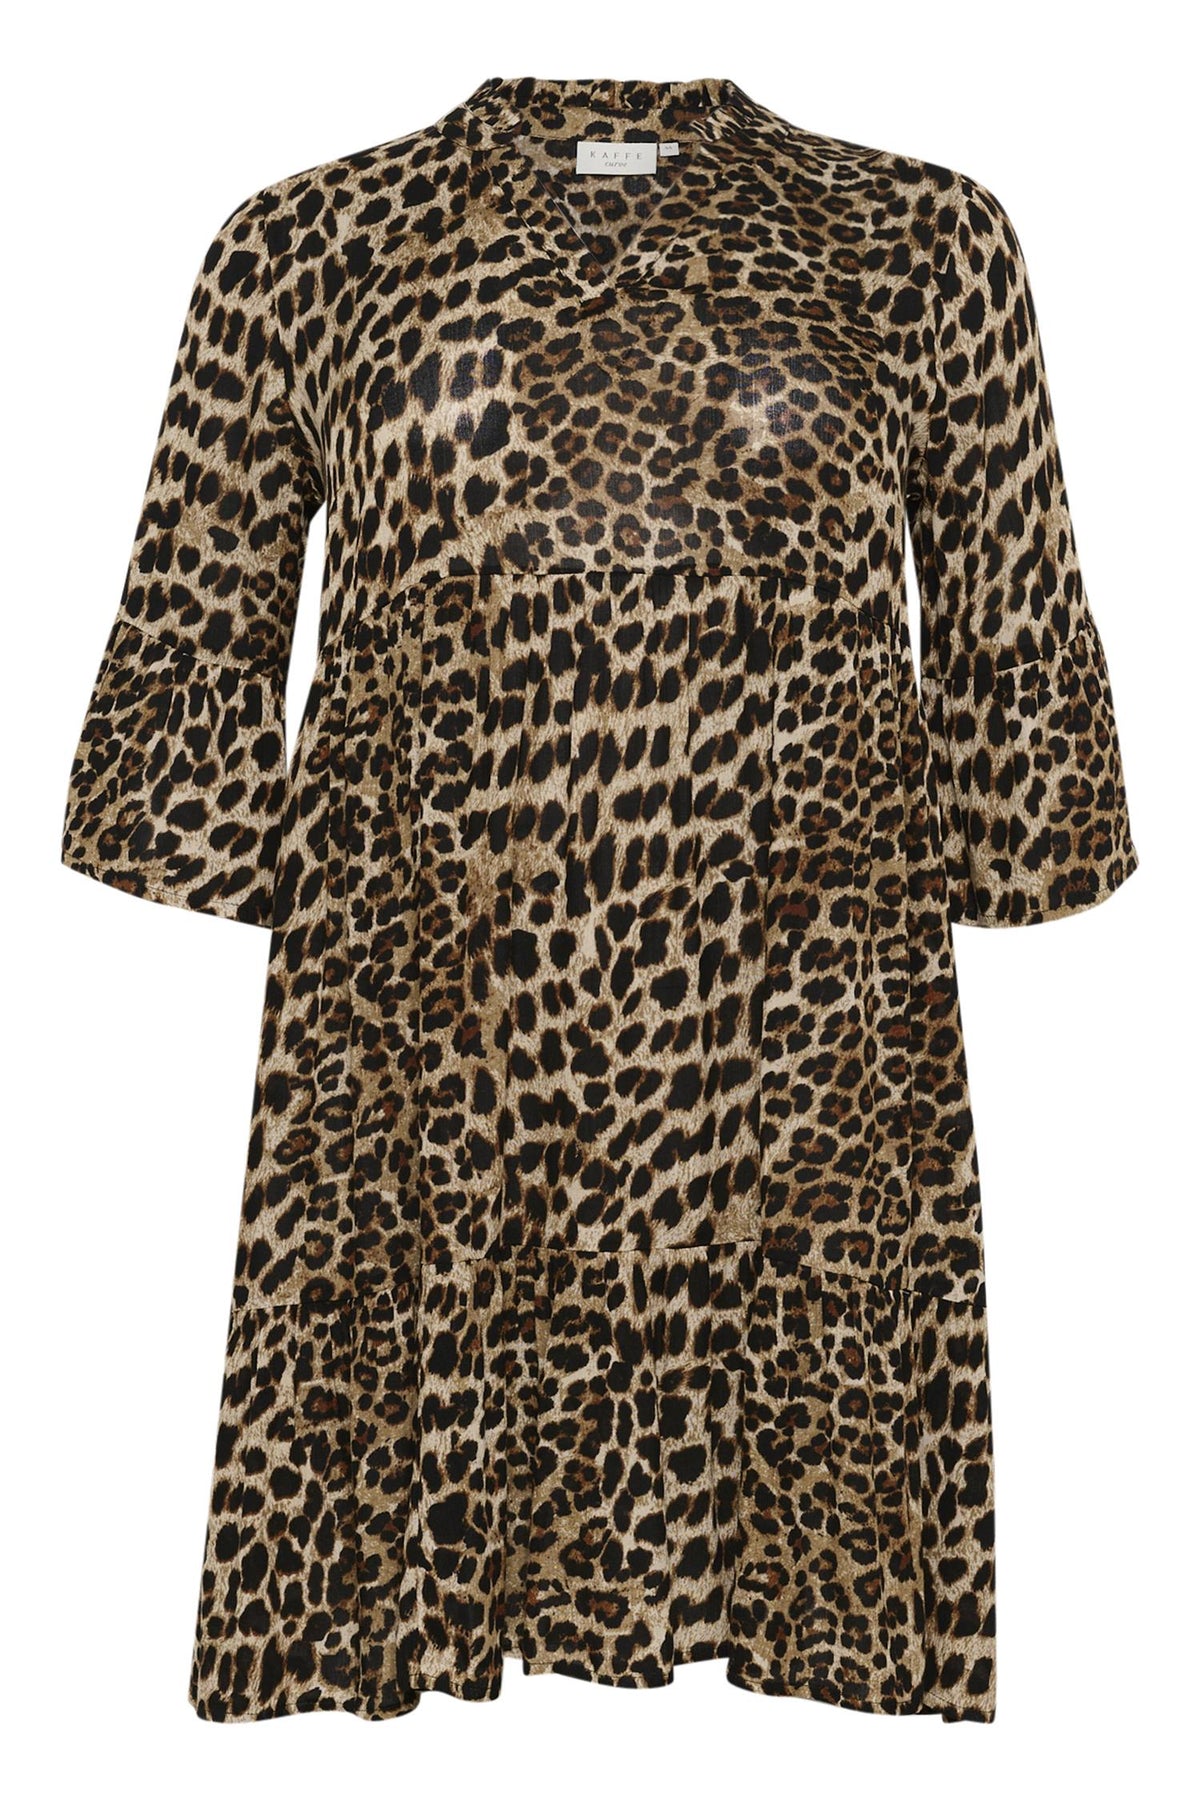 KCami Dress Printed Leopard